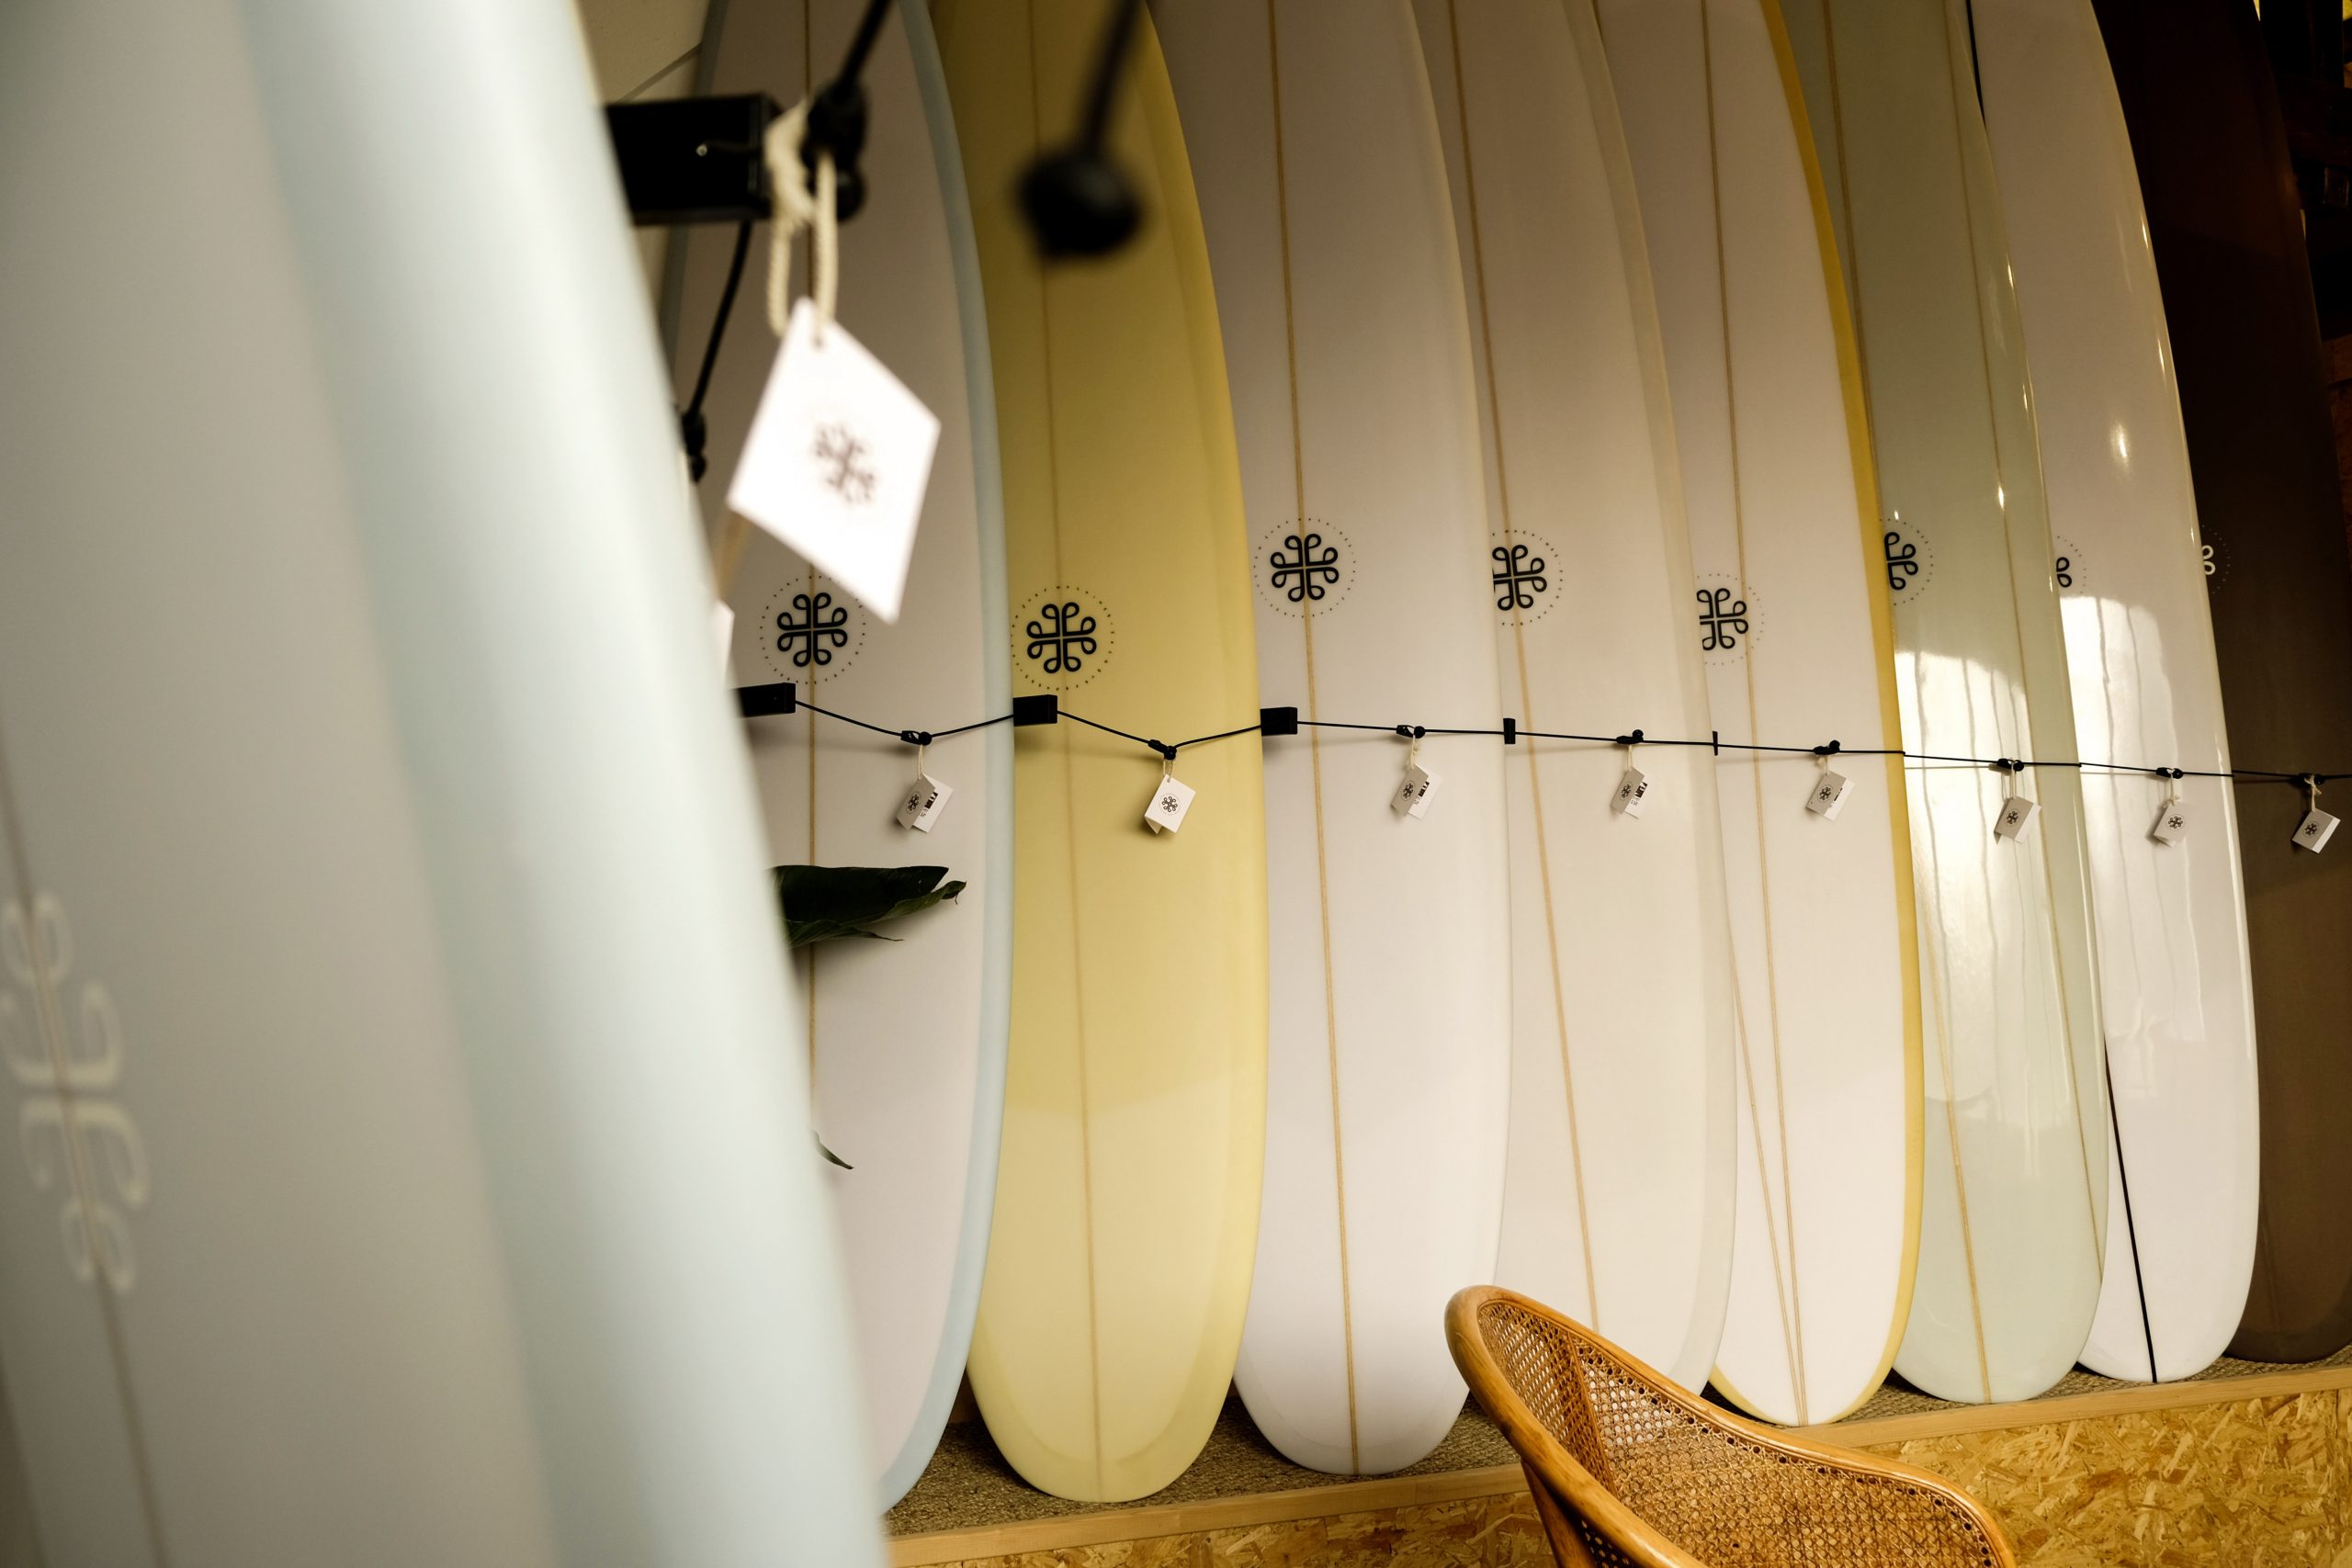 Les planches de la marque Jacq Surfboards, conçues à la main par Mathieu Jacq, présentées dans leur atelier, à Saint-Malo. ©Charles Menguy